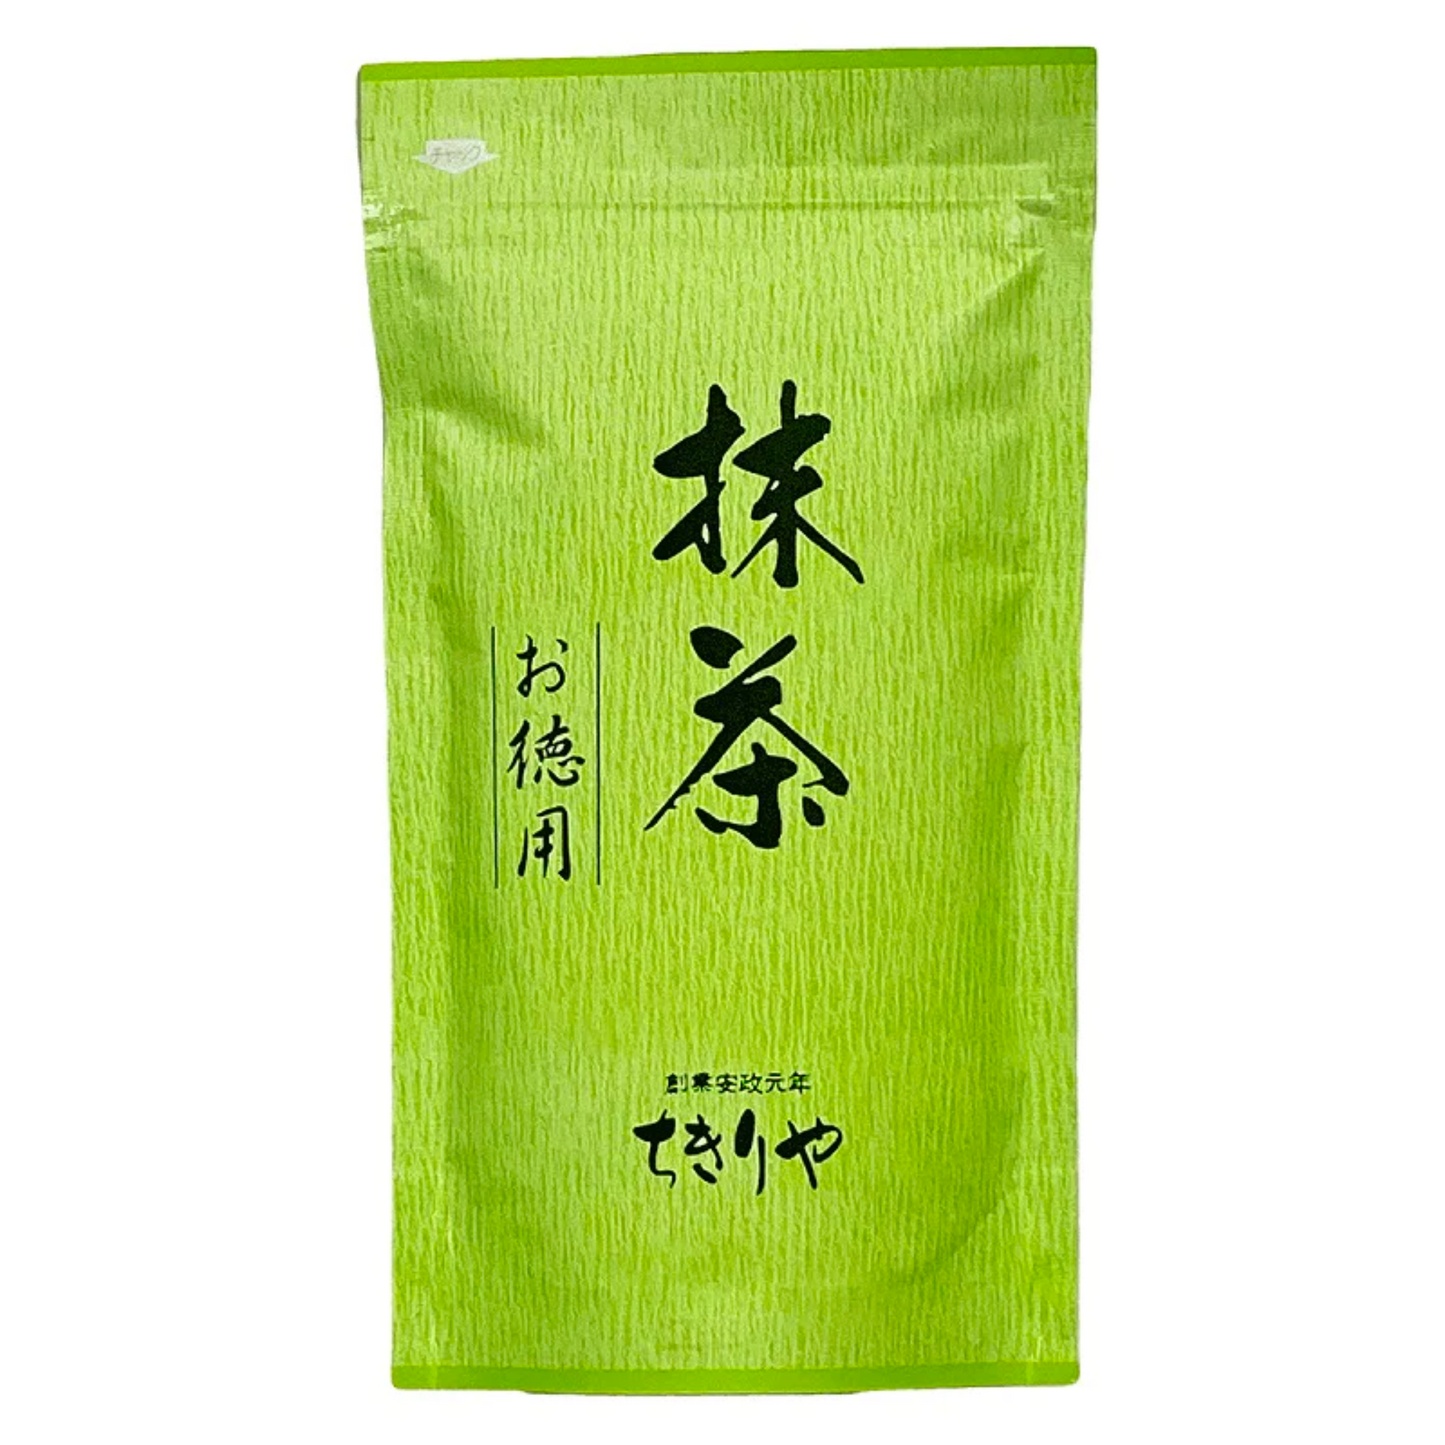 Tè verde Matcha Uji in polvere (150g)